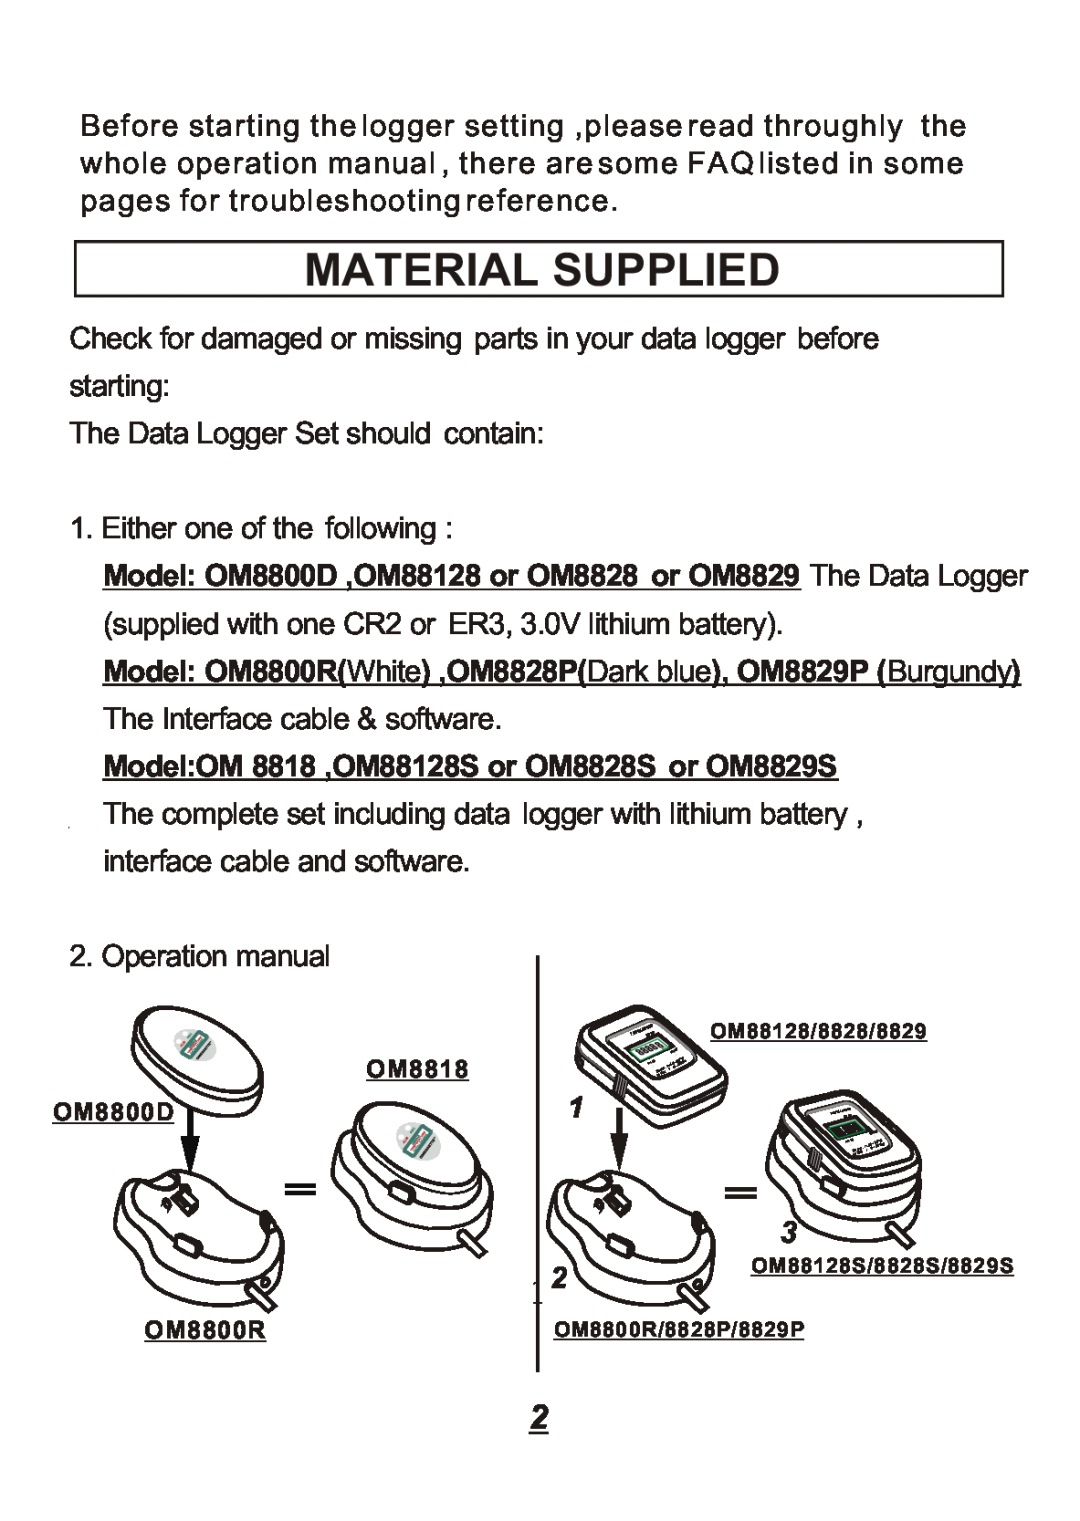 Omega Engineering OM8828, OM8800D, OM8829, OM88128 manual Material Supplied 